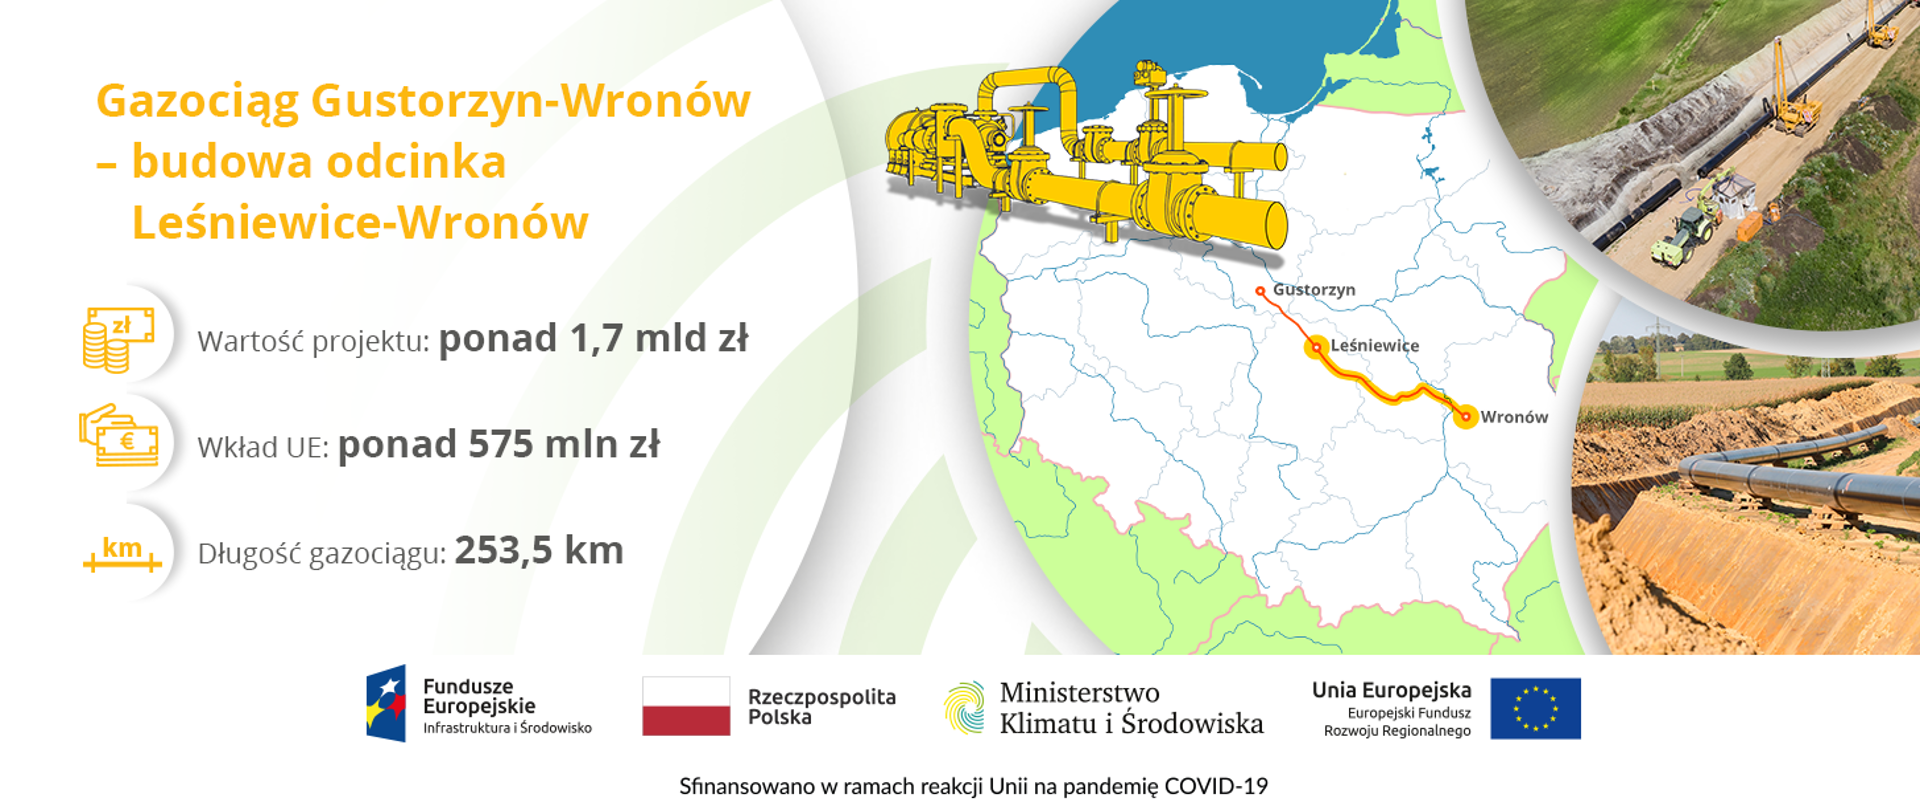 Gazociąg Gustorzyn – Wronów o łącznej długości 307,5 km zwiększy bezpieczeństwo i ciągłość zasilania odbiorców paliwem gazowym w centralnej Polsce. Jego zadaniem jest połączenie węzła i budowanej tłoczni gazu w Gustorzynie z węzłem i tłocznią we Wronowie.
Realizacja tej inwestycji podzielona jest na trzy odcinki:
• Gustorzyn – Leśniewice o dł. 54 km
• Leśniewice – Rawa Mazowiecka o dł. 100,3 km
• Rawa Mazowiecka – Wronów o dł. 153,2 km.
